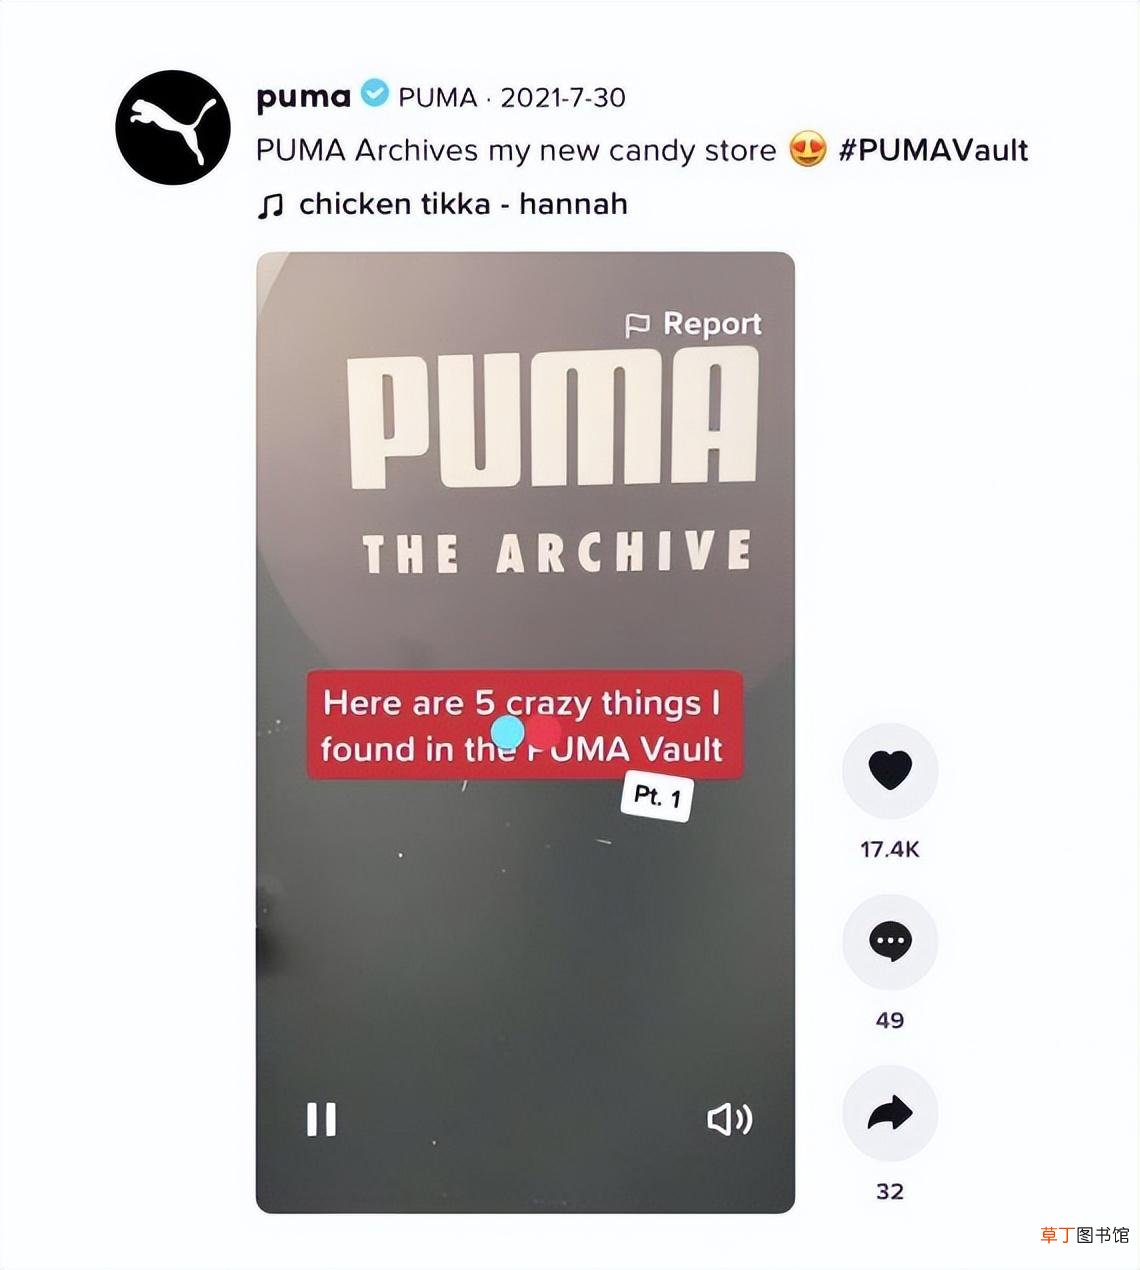 puma品牌介绍 puma是哪个国家的品牌